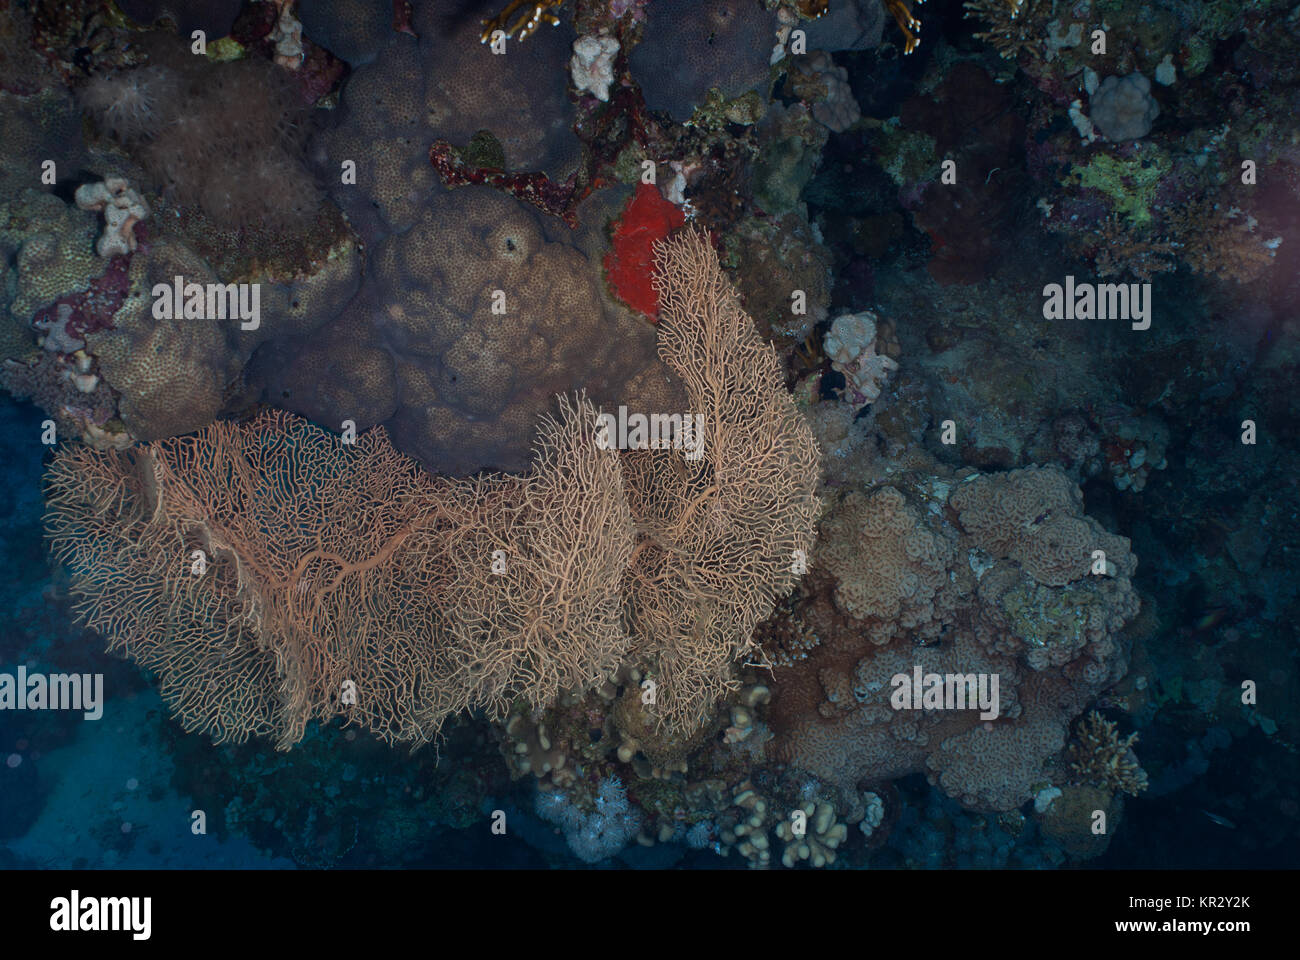 Giganti di Mare-ventola, Annella mollis, Subergorgiidae, Sharm el Sheik, Mar Rosso, Egitto Foto Stock